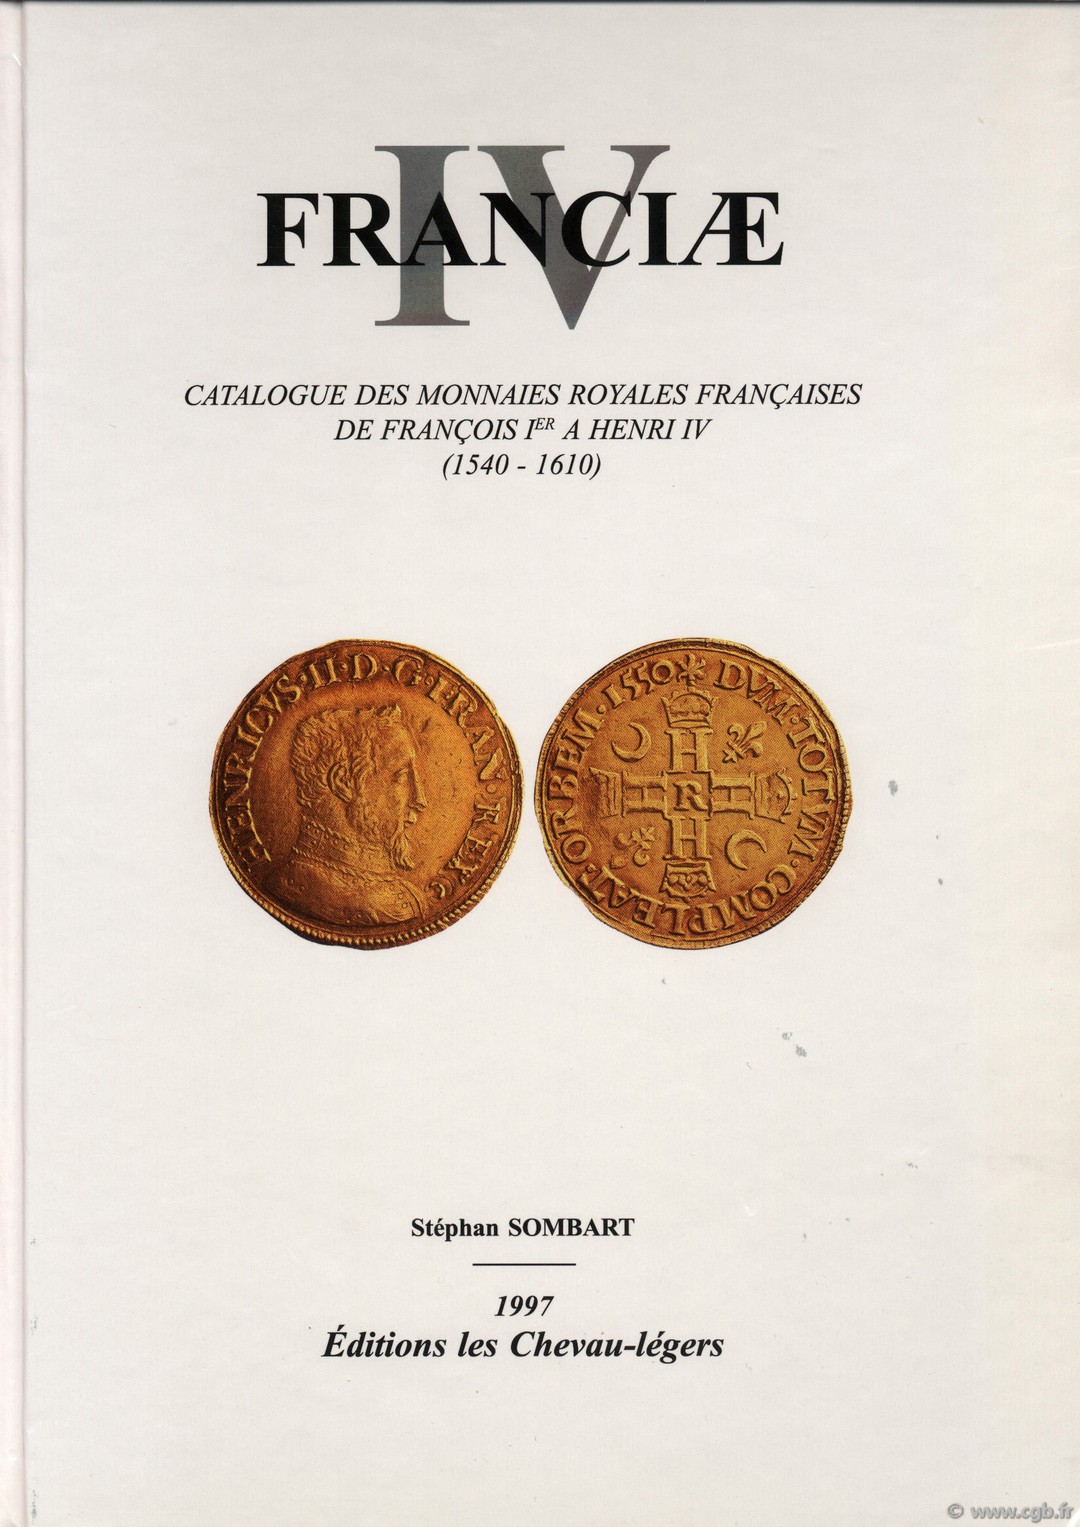 Franciæ IV, catalogue des monnaies royales françaises de François Ier à Henri IV (1540-1610) SOMBART Stéphan